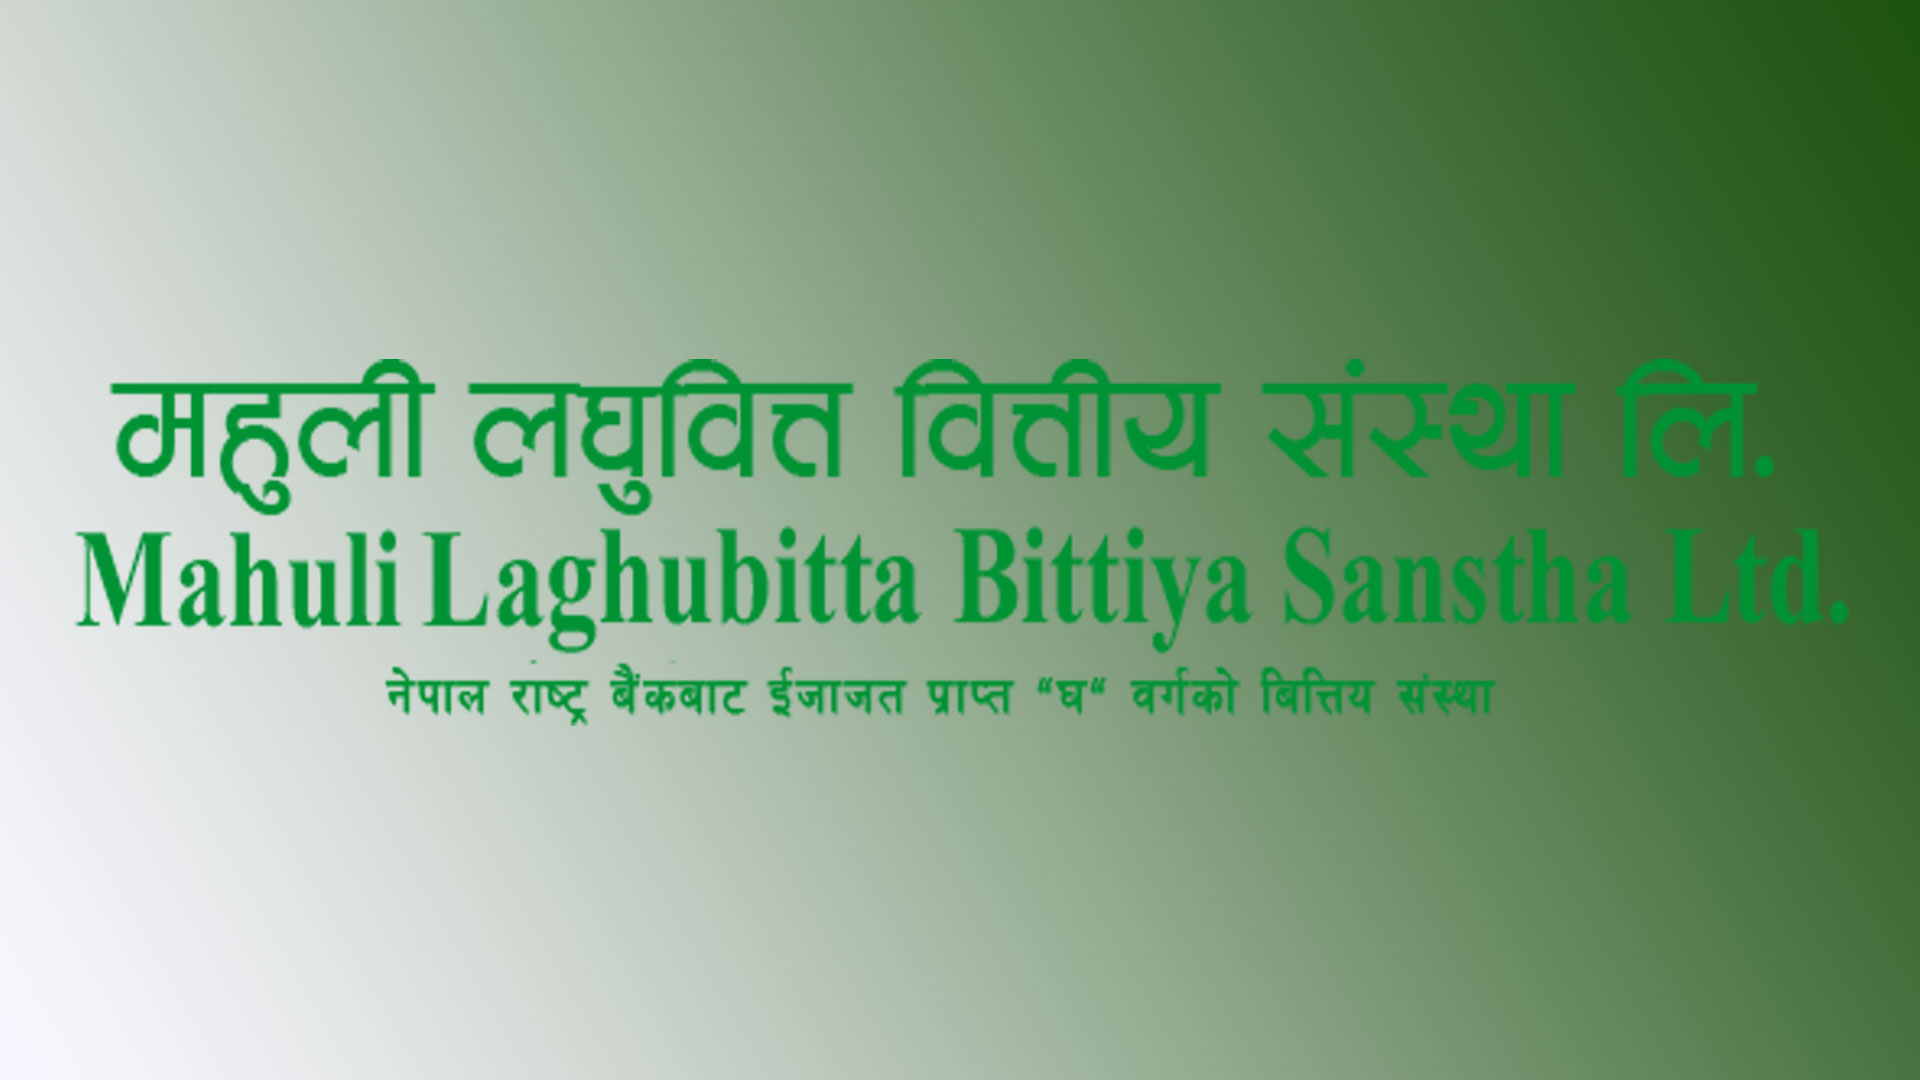 mahuli laghubitta bittiya sanstha